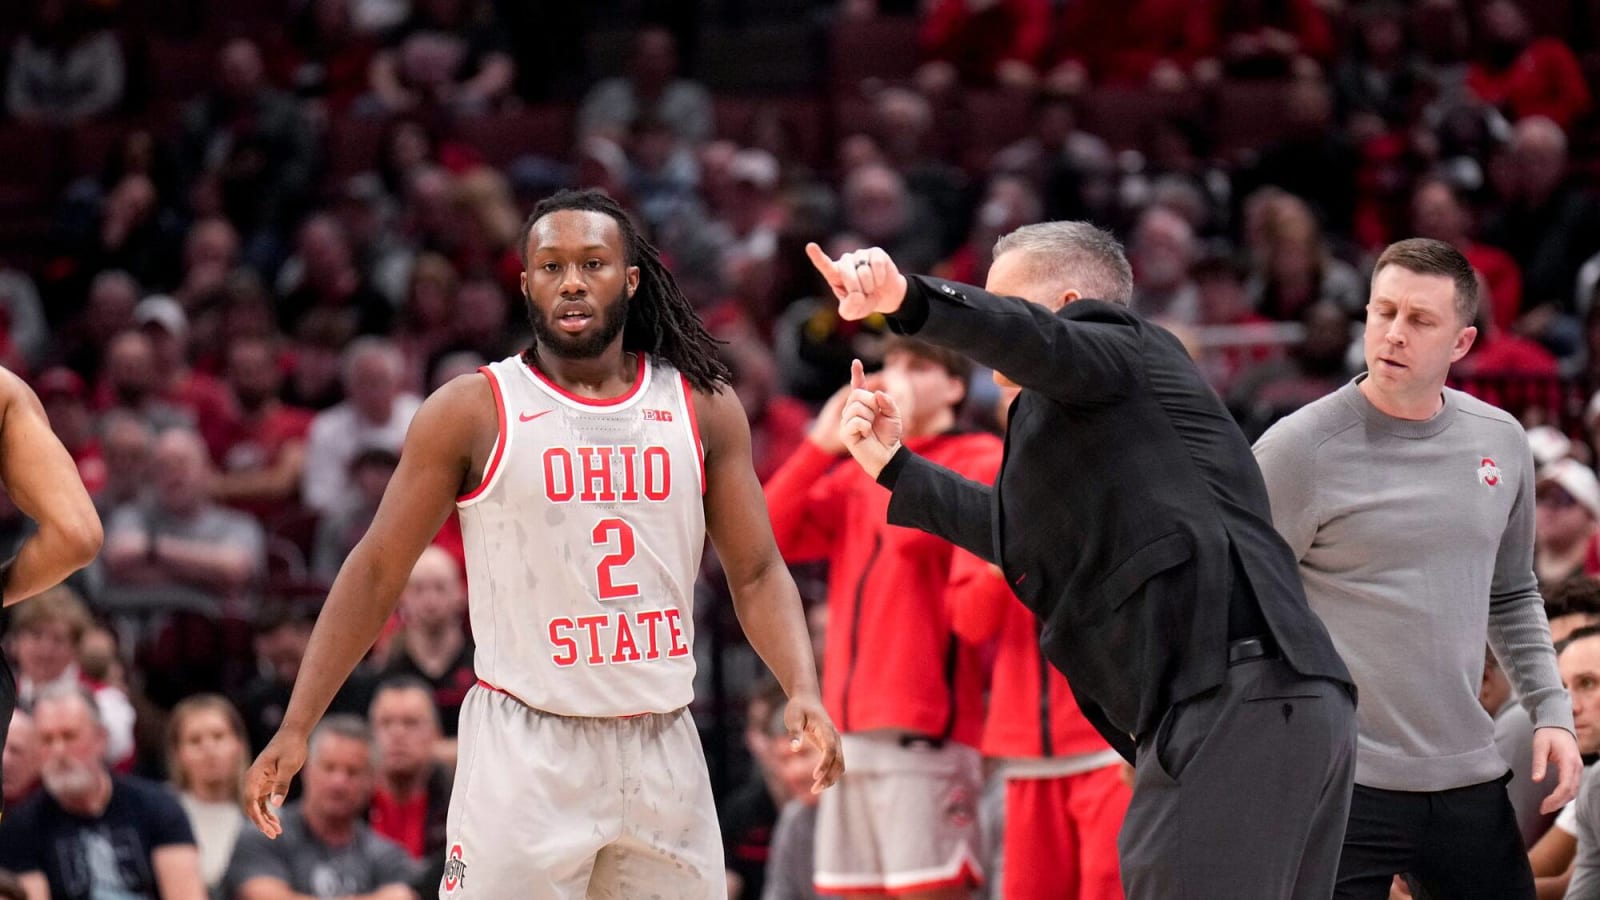 Can Ohio State Make the NCAA Tournament?